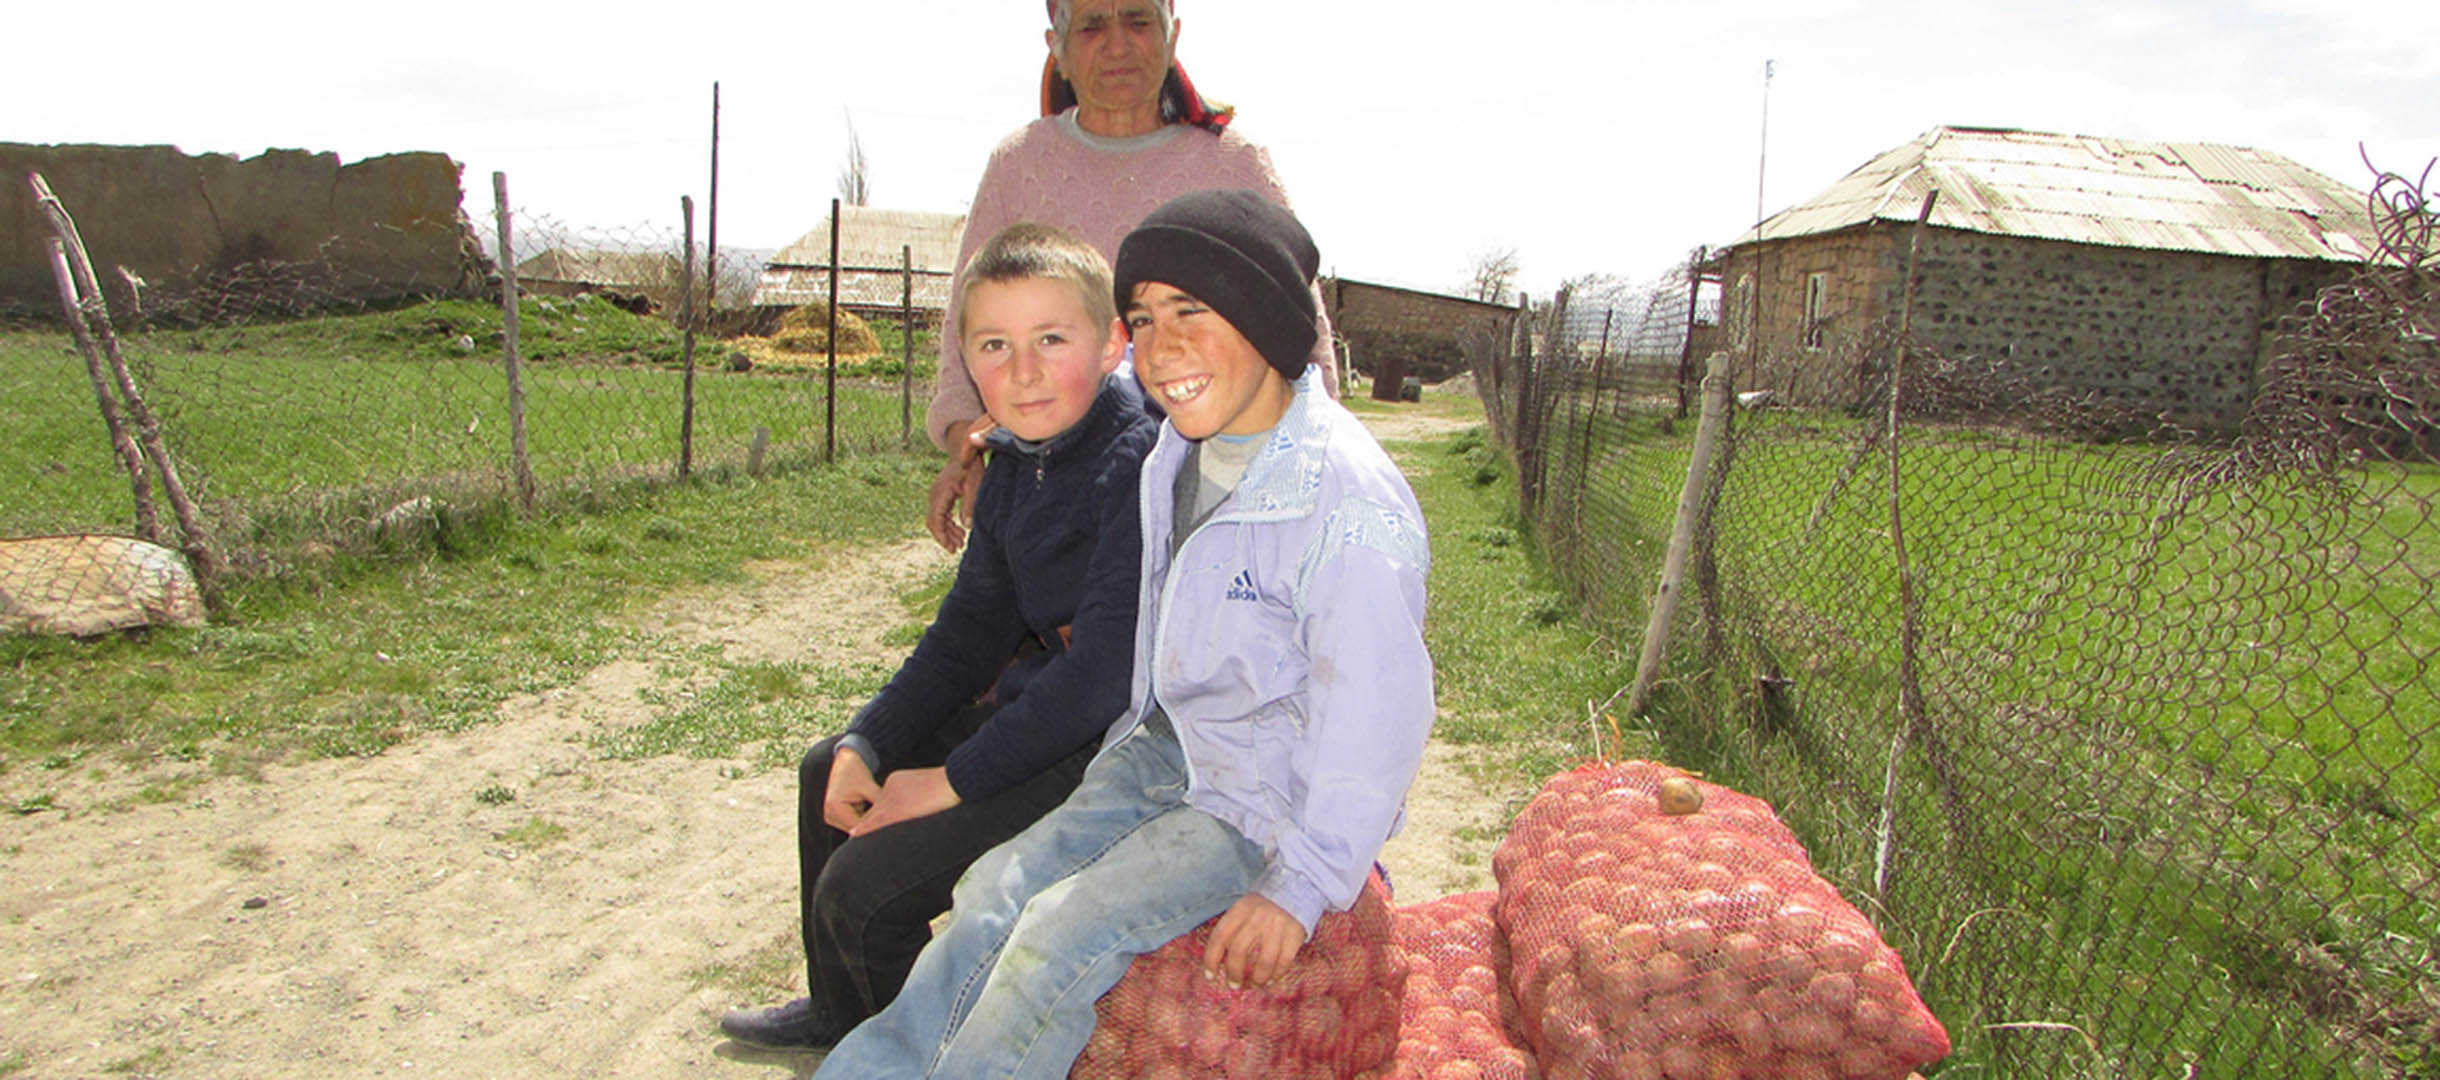 Durch die Hilfe von World Vision sind die Kinder in Armenien Vardenis jetzt gut versorgt